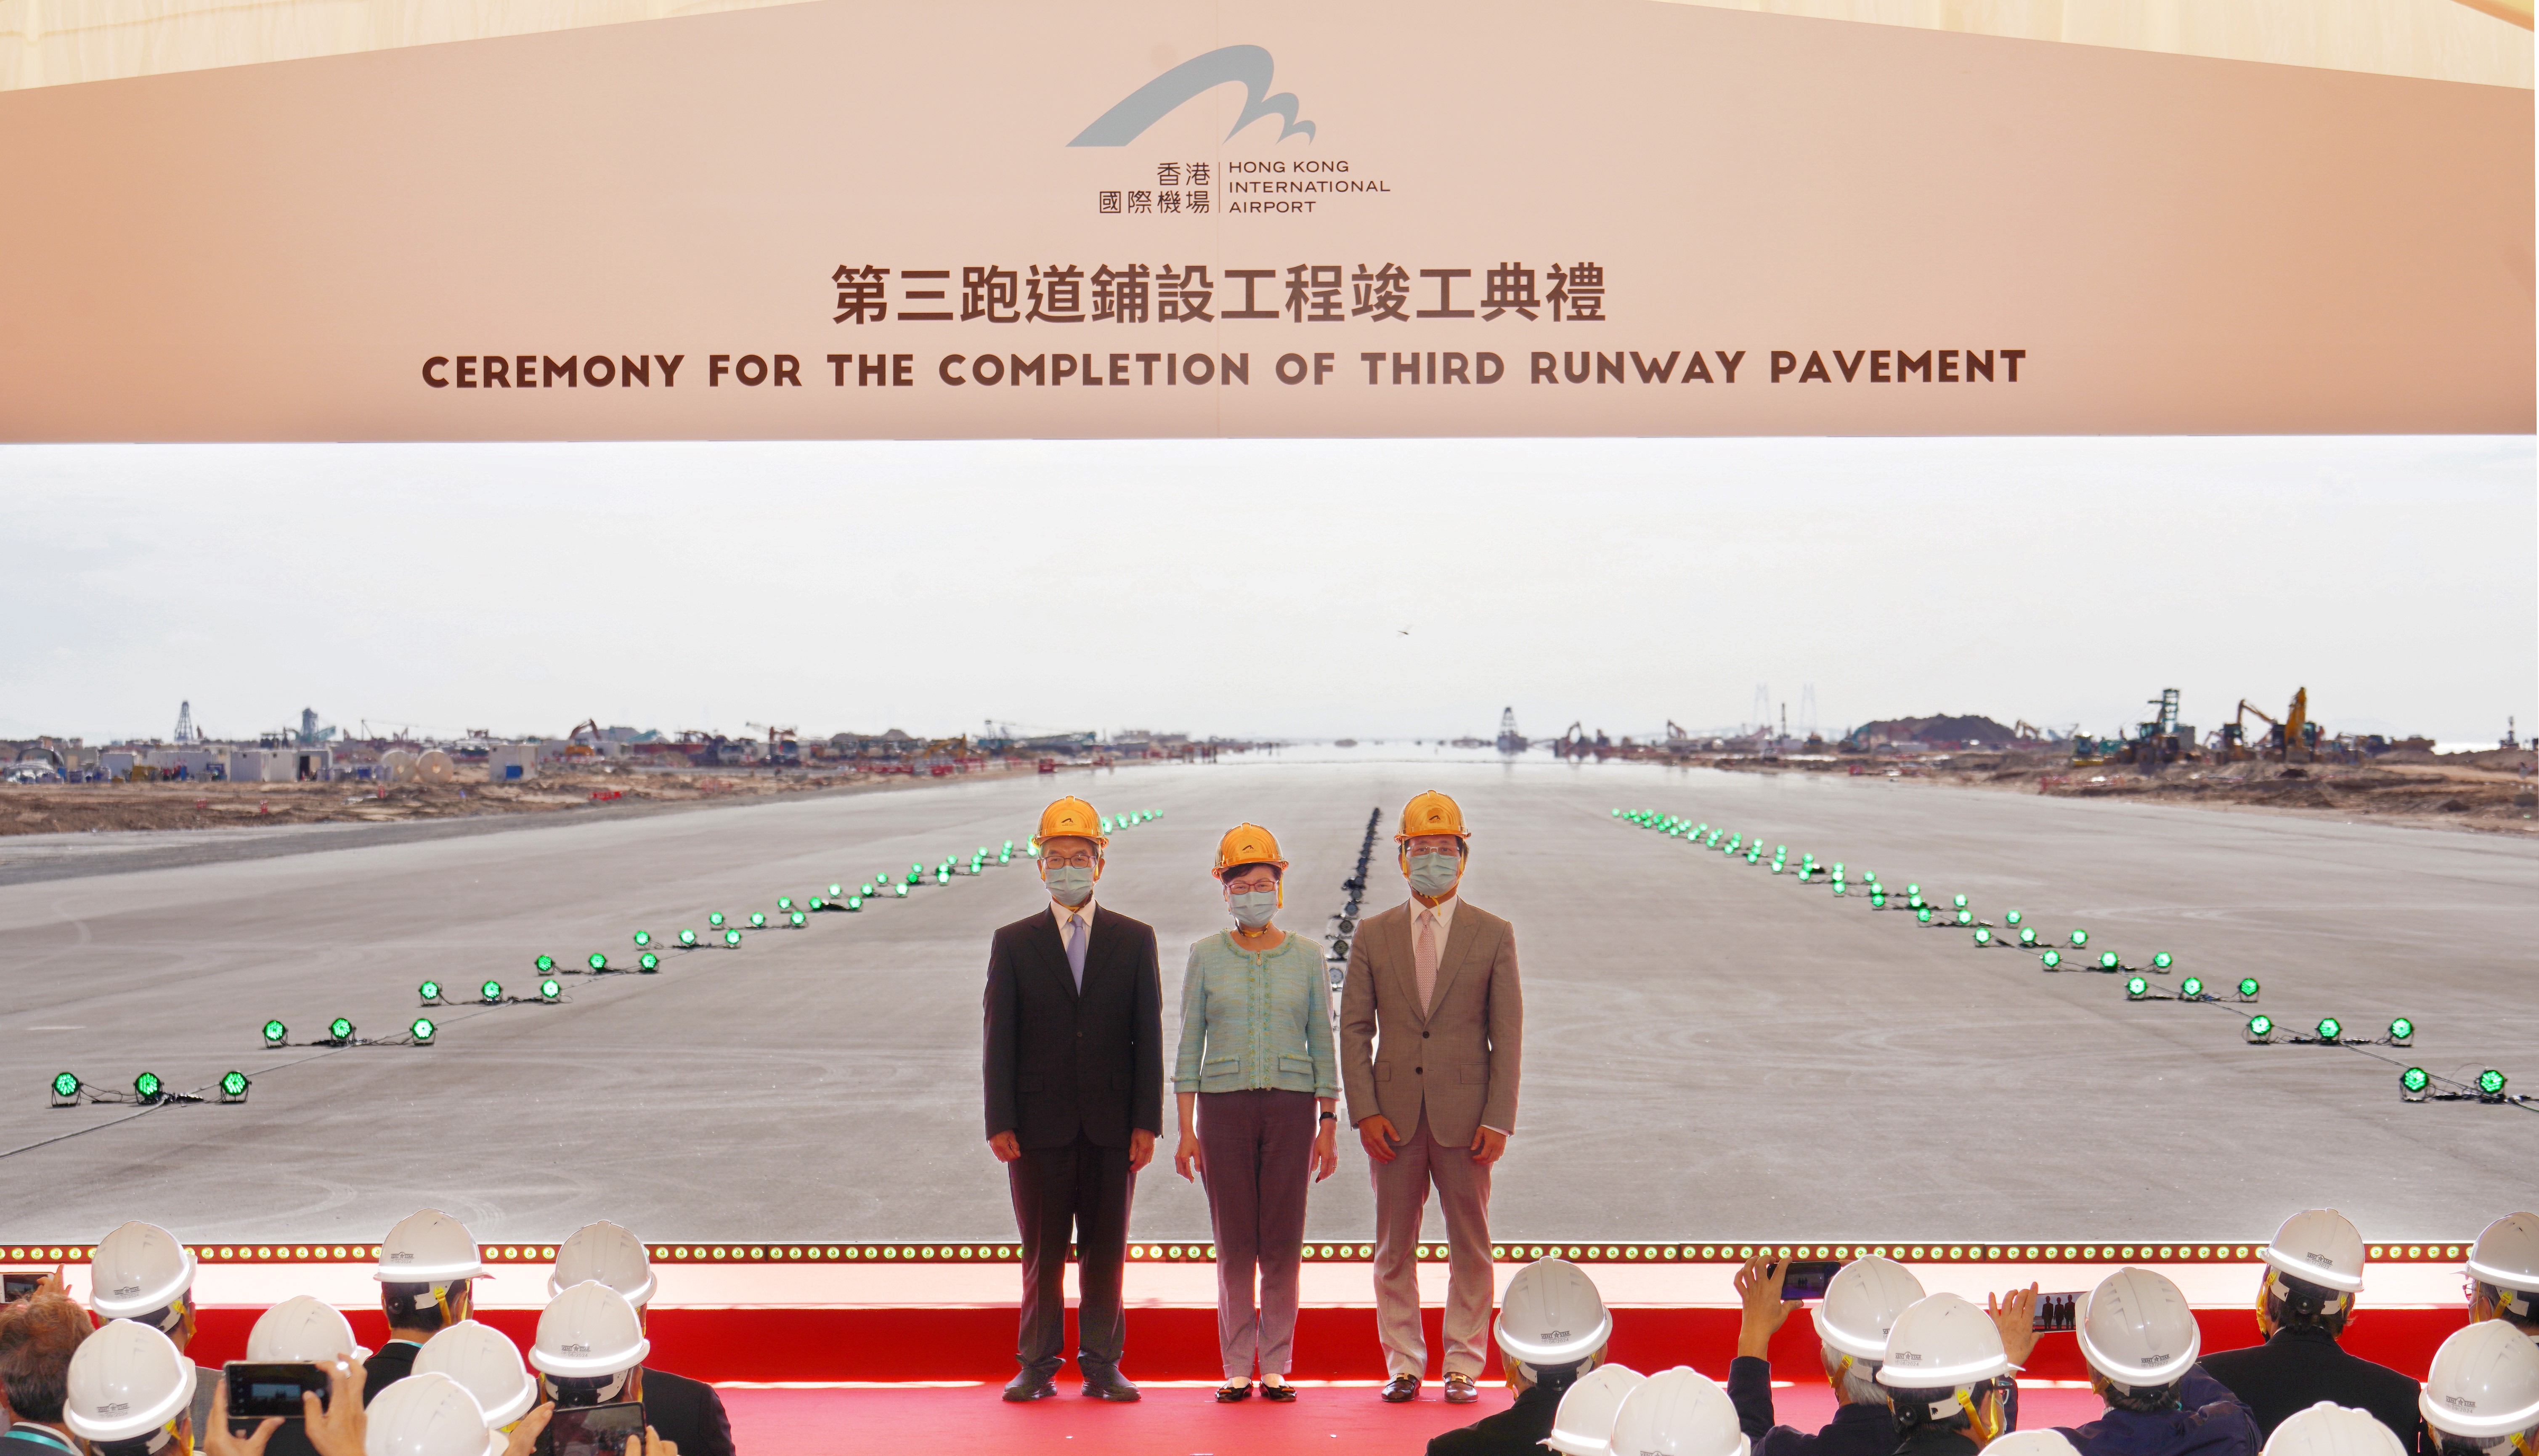 行政长官林郑月娥（中）、机管局主席苏泽光（左）及行政总裁林天福（右）为第三跑道铺设工程竣工典礼担任主礼嘉宾。